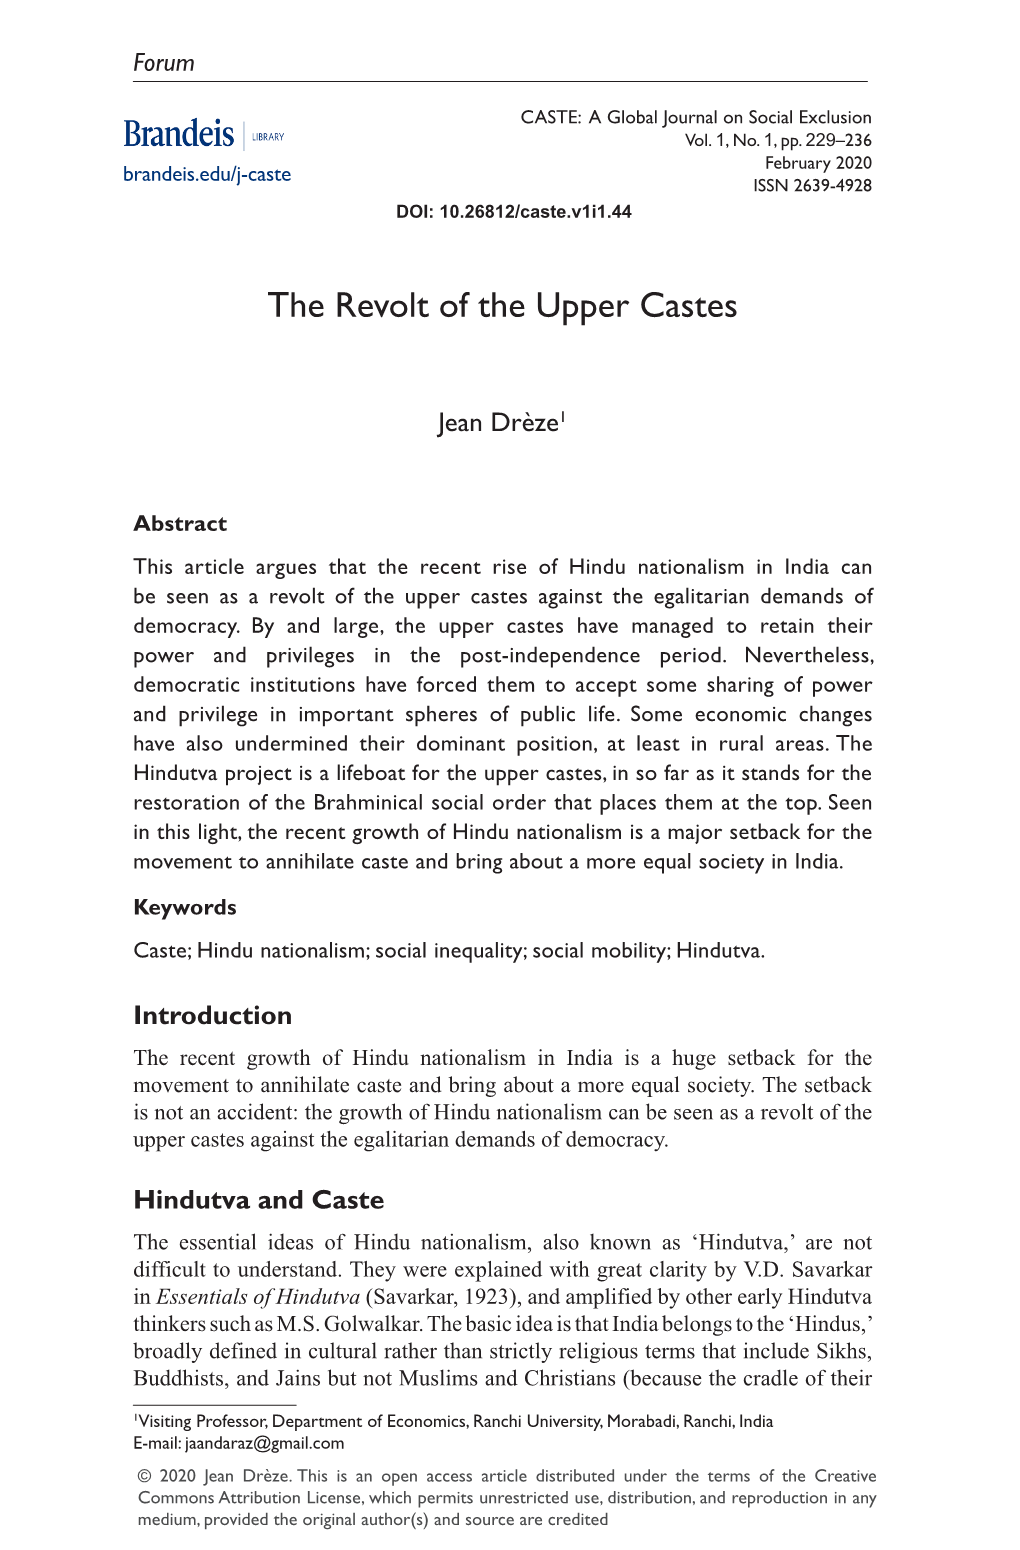 The Revolt of the Upper Castes